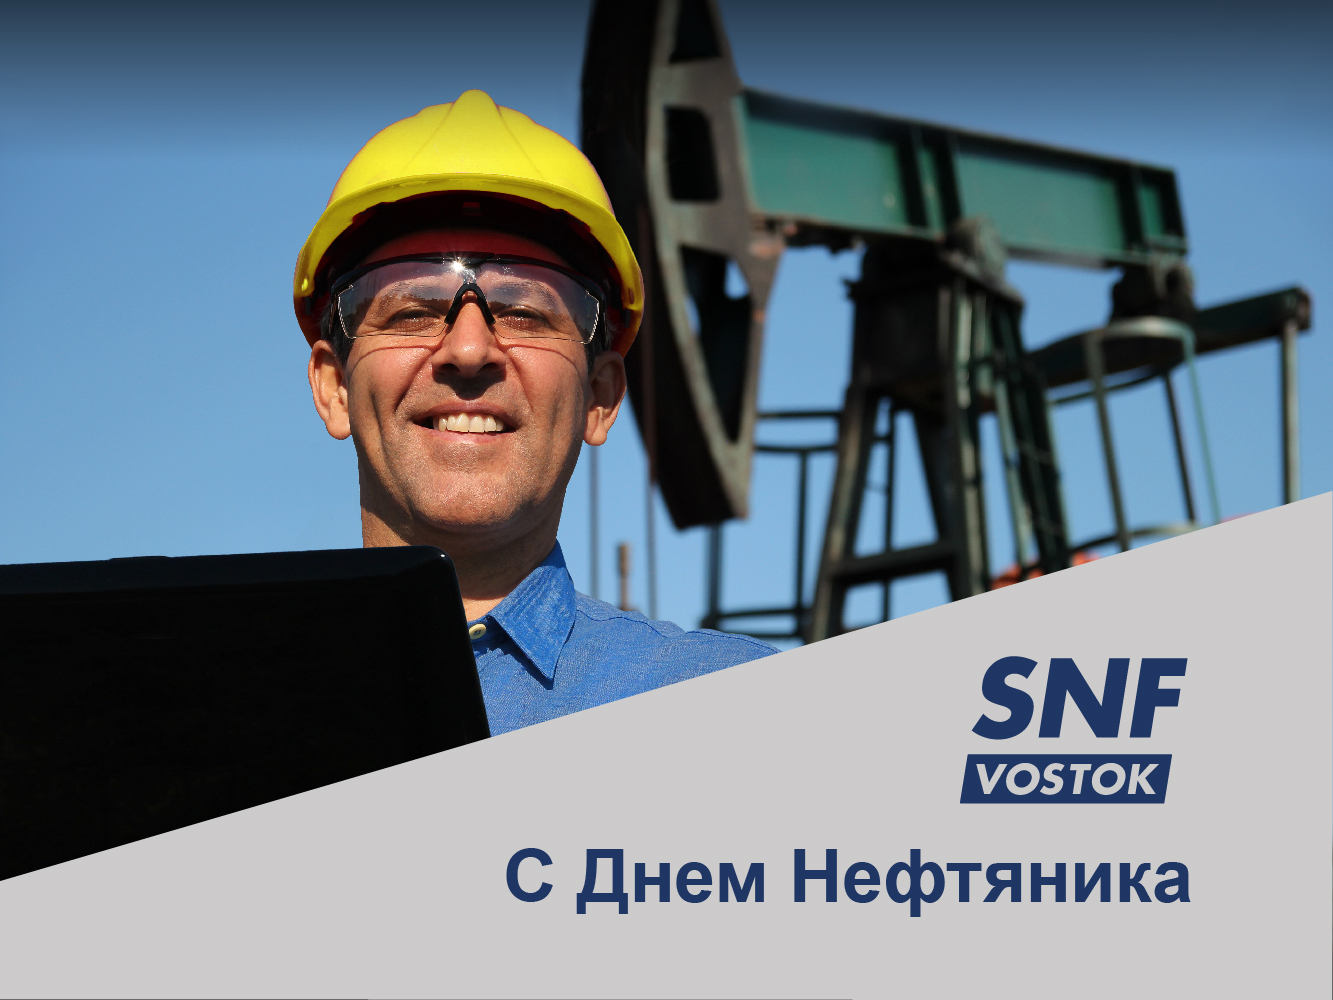 6 сентября отмечается День нефтяника